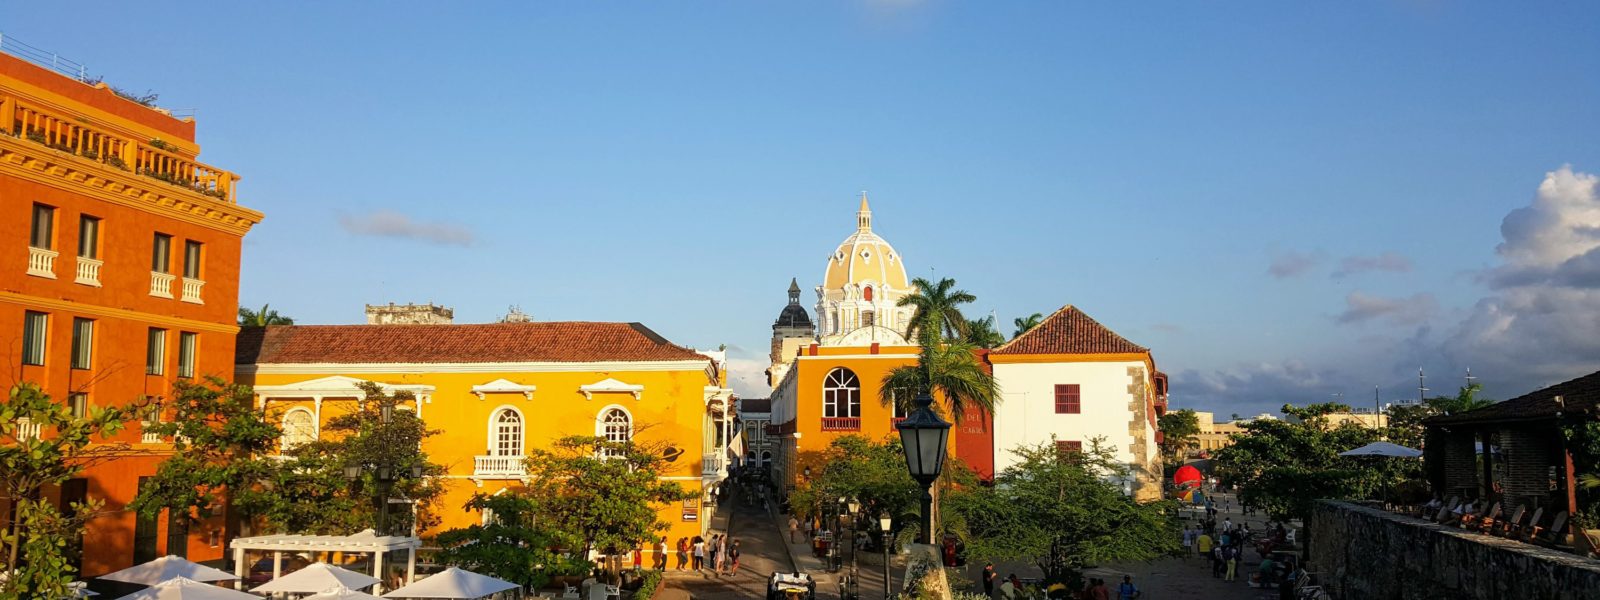 Cartagena – Hot and Touristy